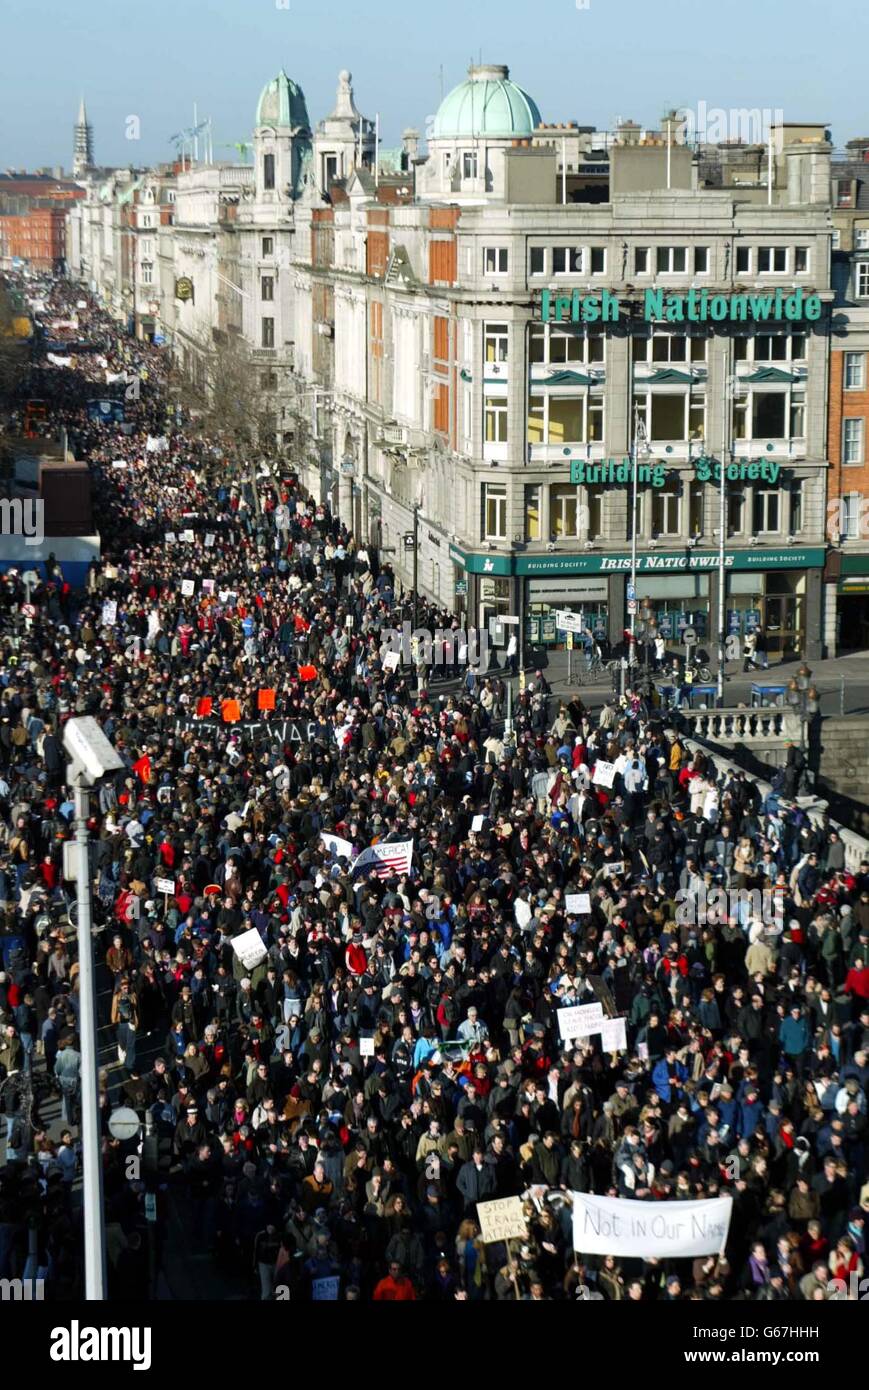 Manifestantes contra la guerra que cruzan el puente o'Connell, Dublín, República de Irlanda, durante una manifestación contra la guerra, que llevó a más de 20,000 personas a las calles. Foto PA. Foto de stock